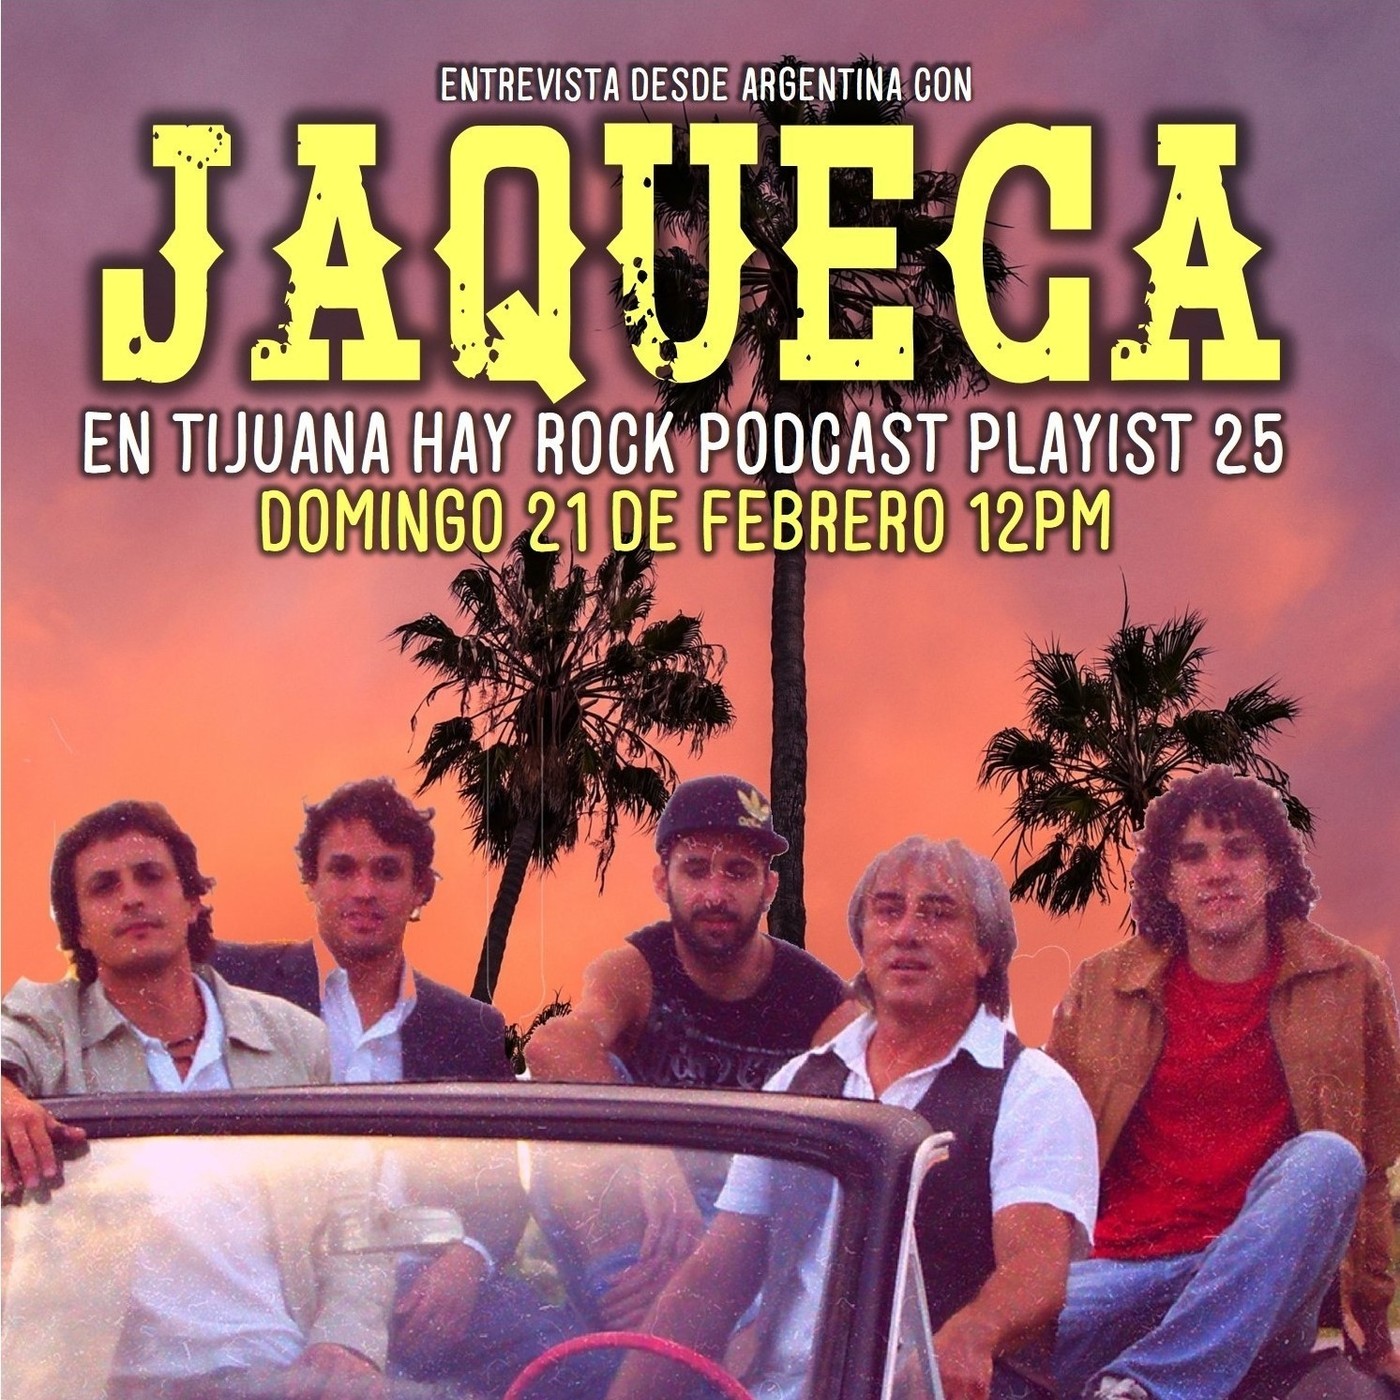 En Tijuana Hay Rock Podcast: Playlist - Programa #25: Entrevista con Jaqueca Image